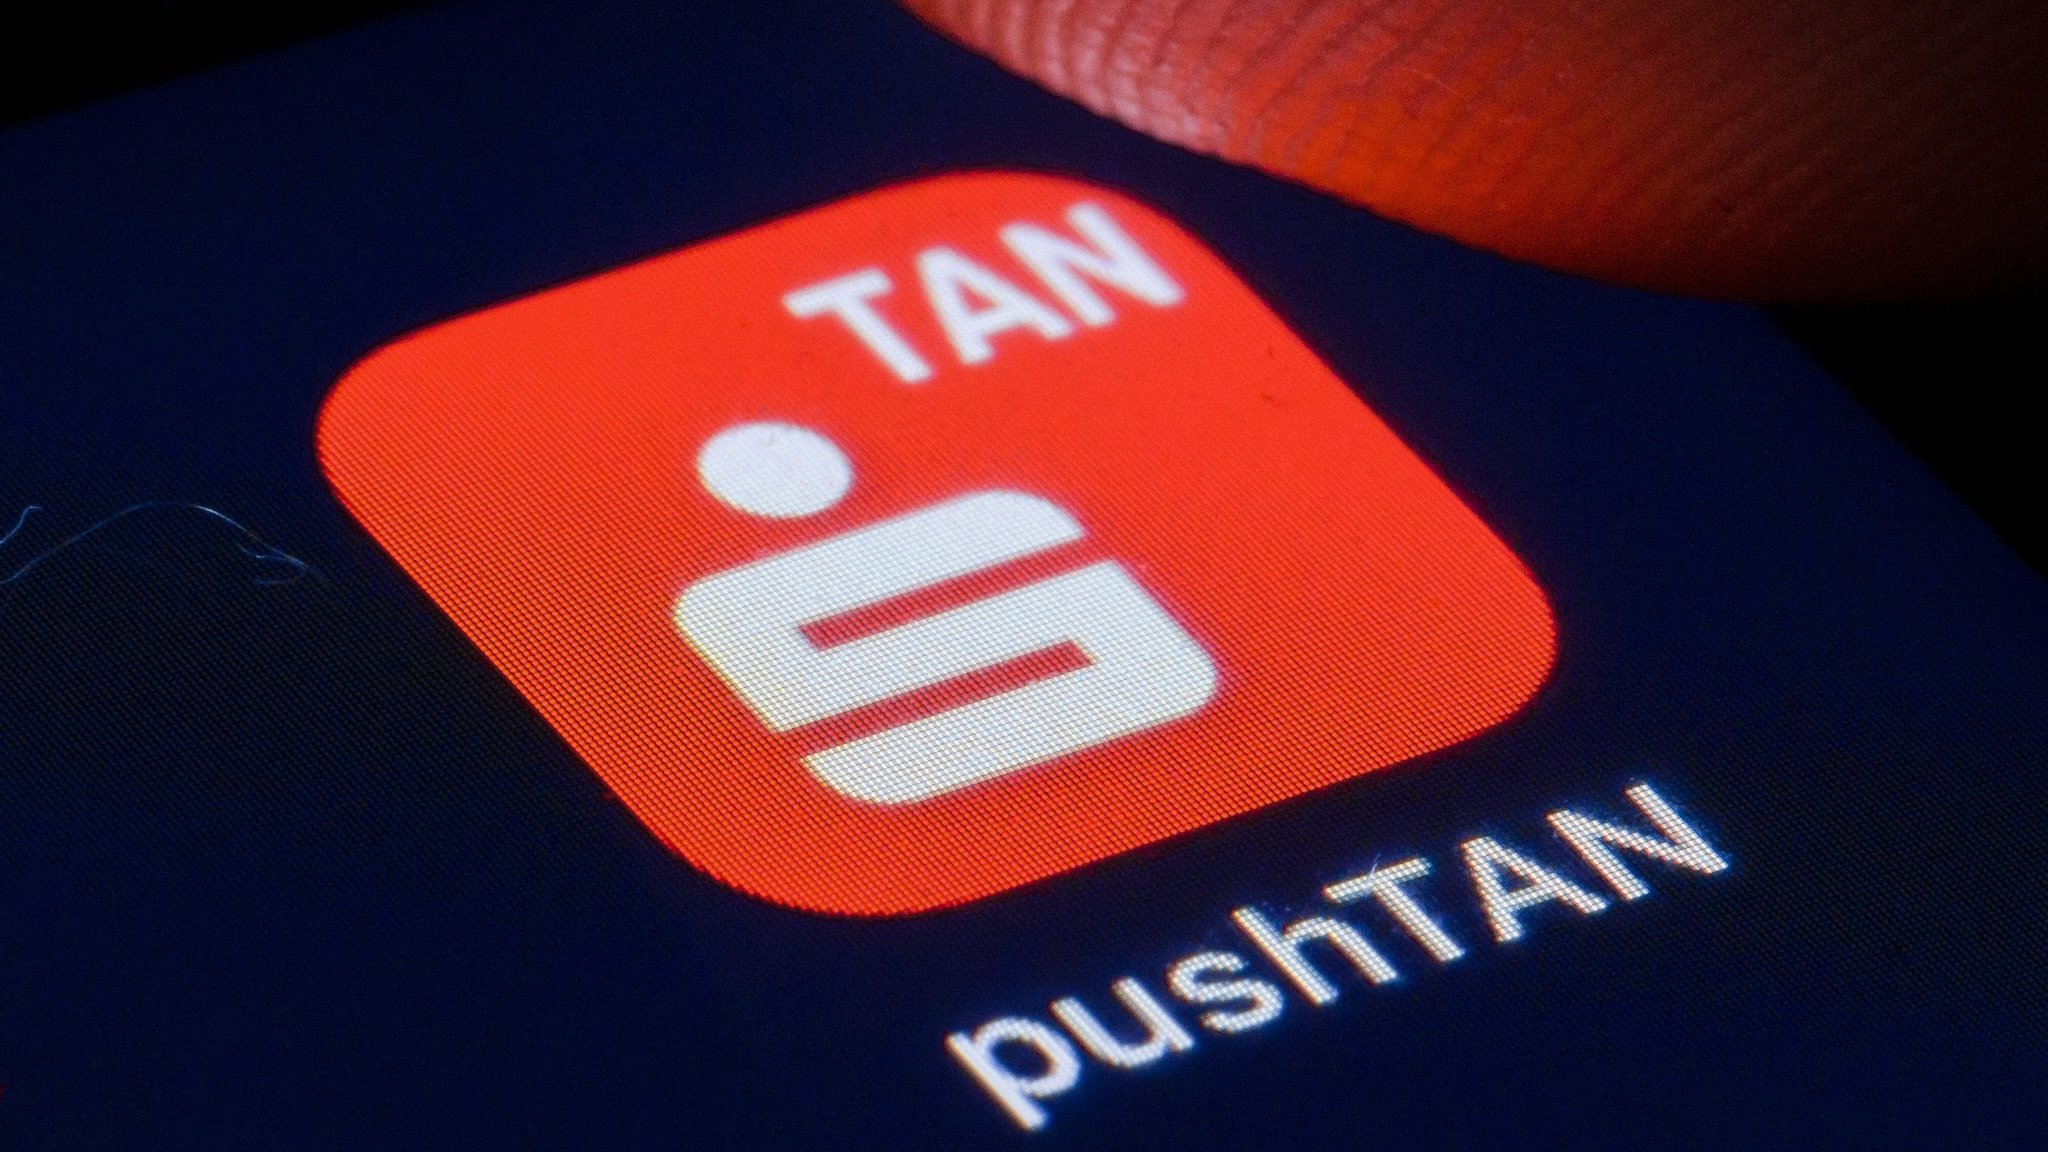 Die pushTAN-App der Sparkasse auf einem Handy